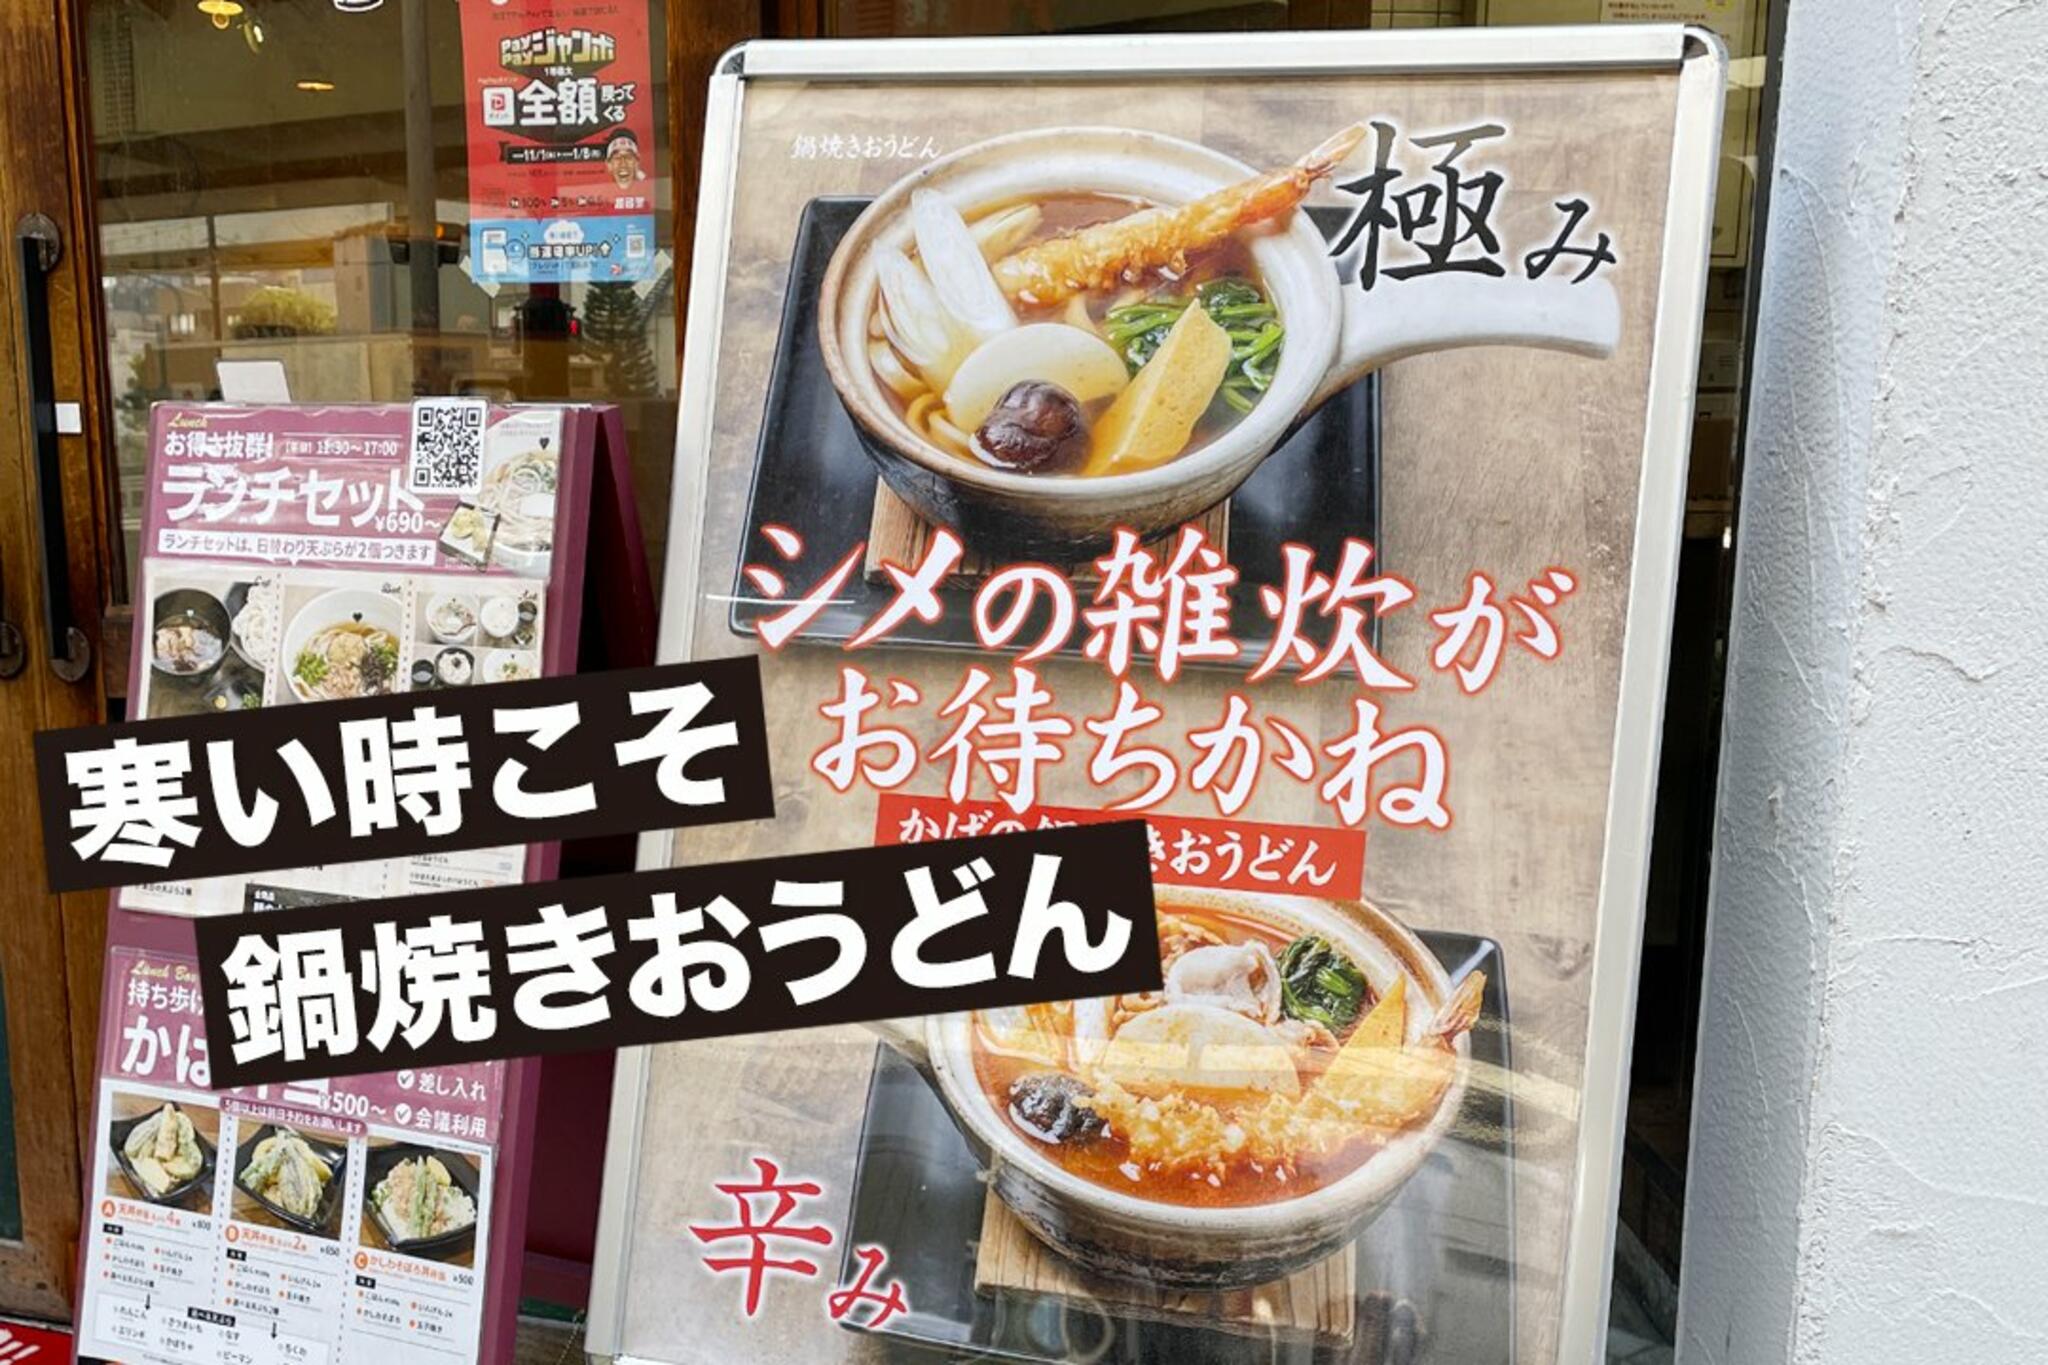 かばのおうどん 横浜元町本店からのお知らせ(寒い時こそ、かばの鍋焼きおうどん！)に関する写真